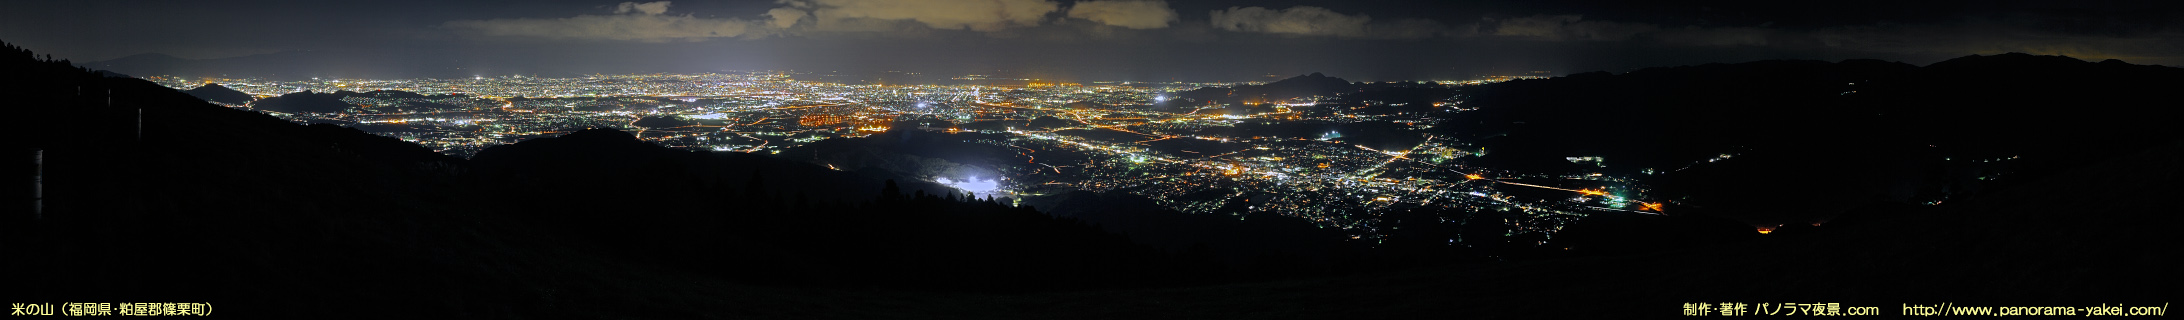 米の山展望台（山頂展望広場）からのパノラマ夜景写真